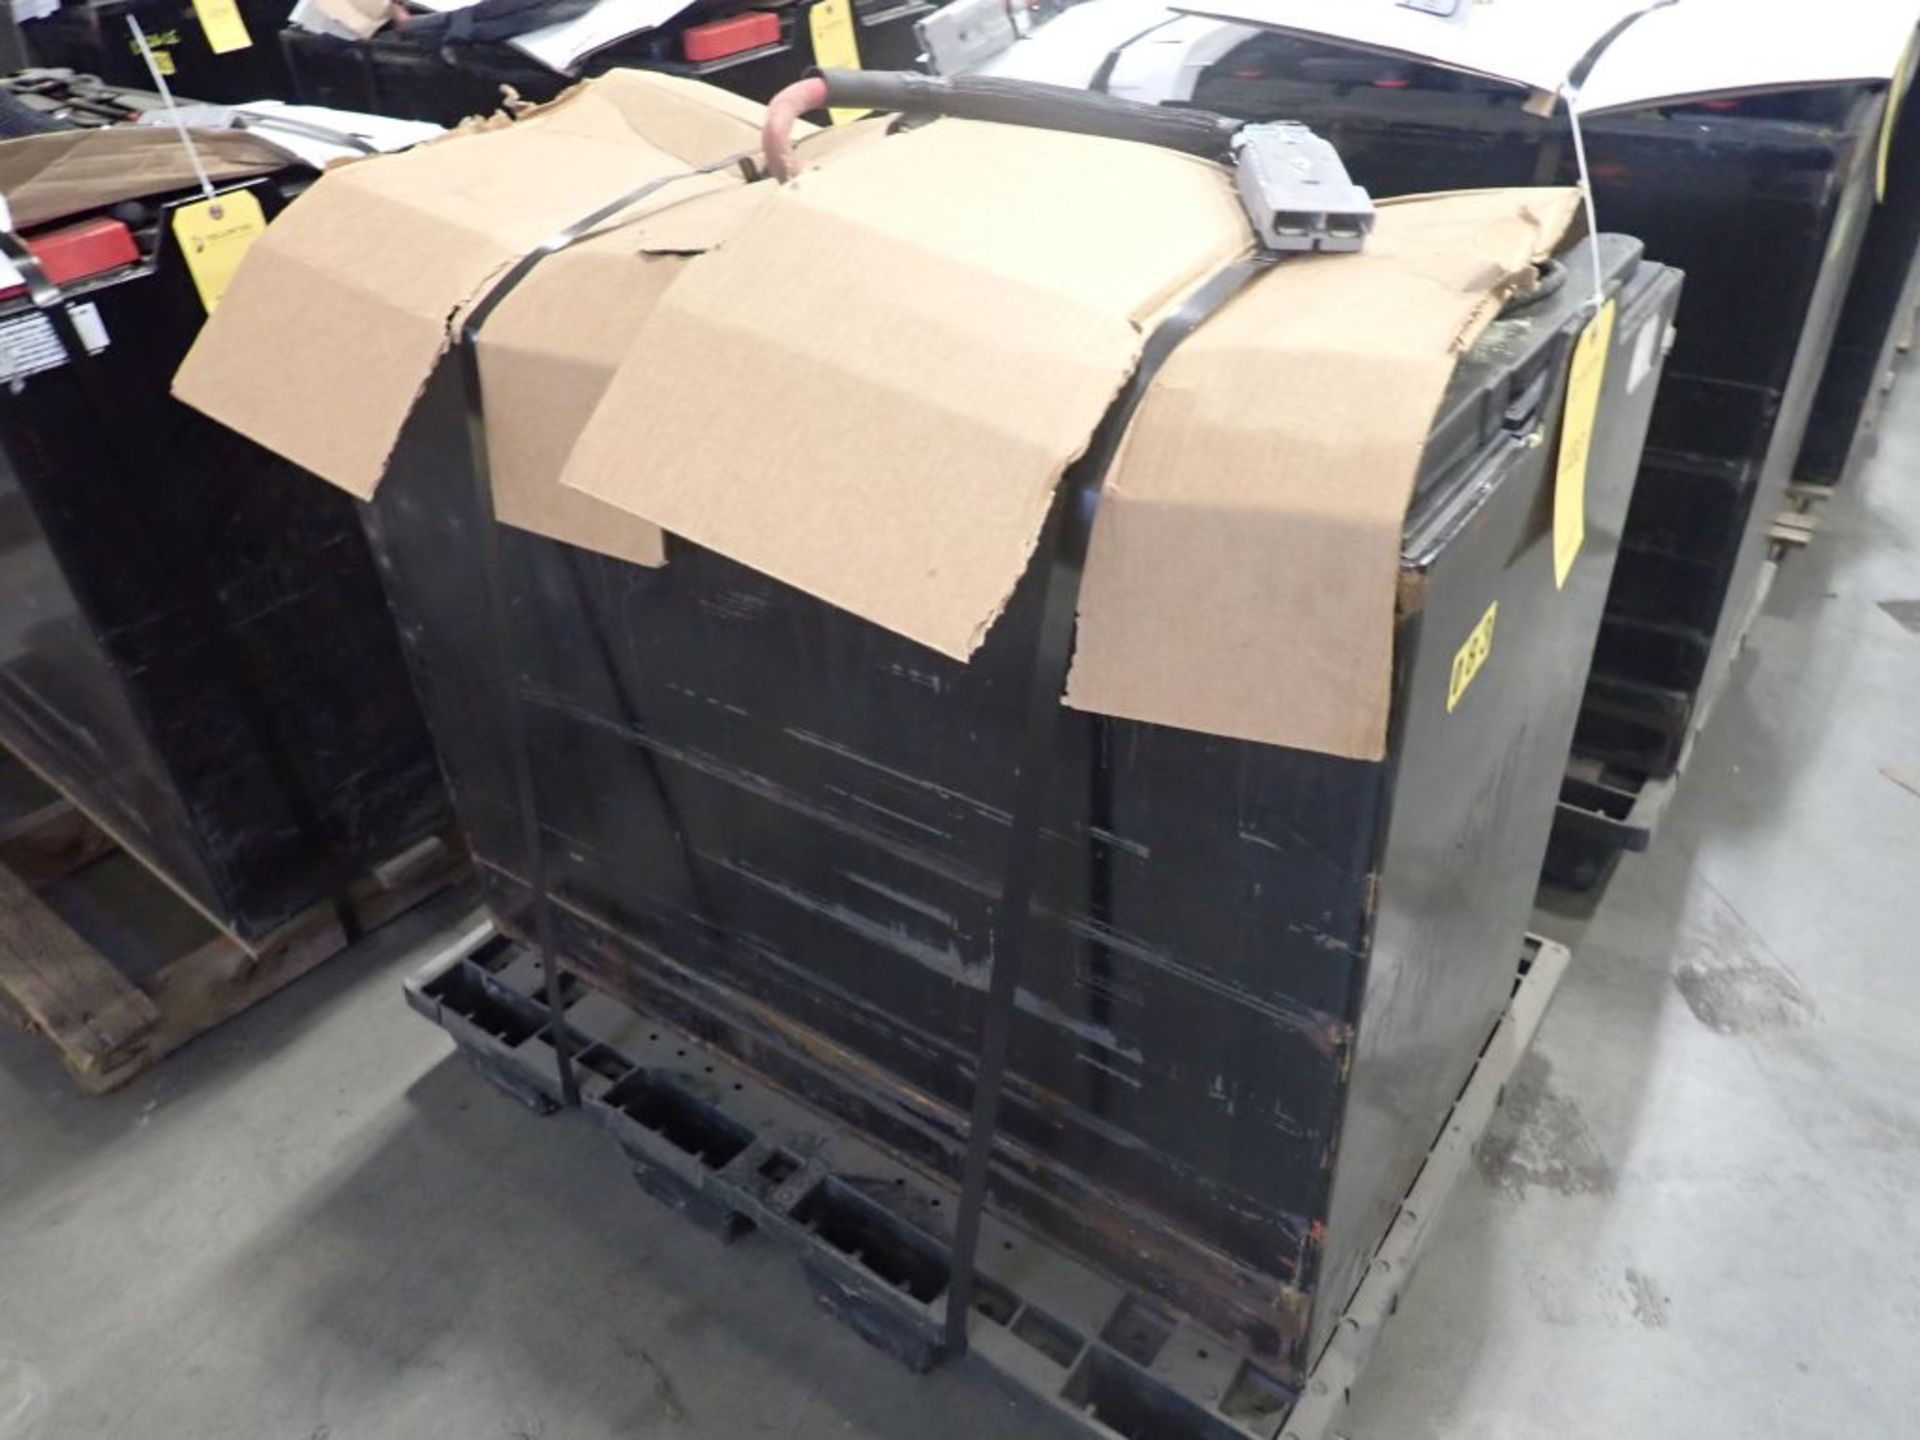 Deka 36V Forklift Battery - 36V; Type 18-D125-17; Tag: 218363; Lot Loading Fee: $30 - Image 2 of 4